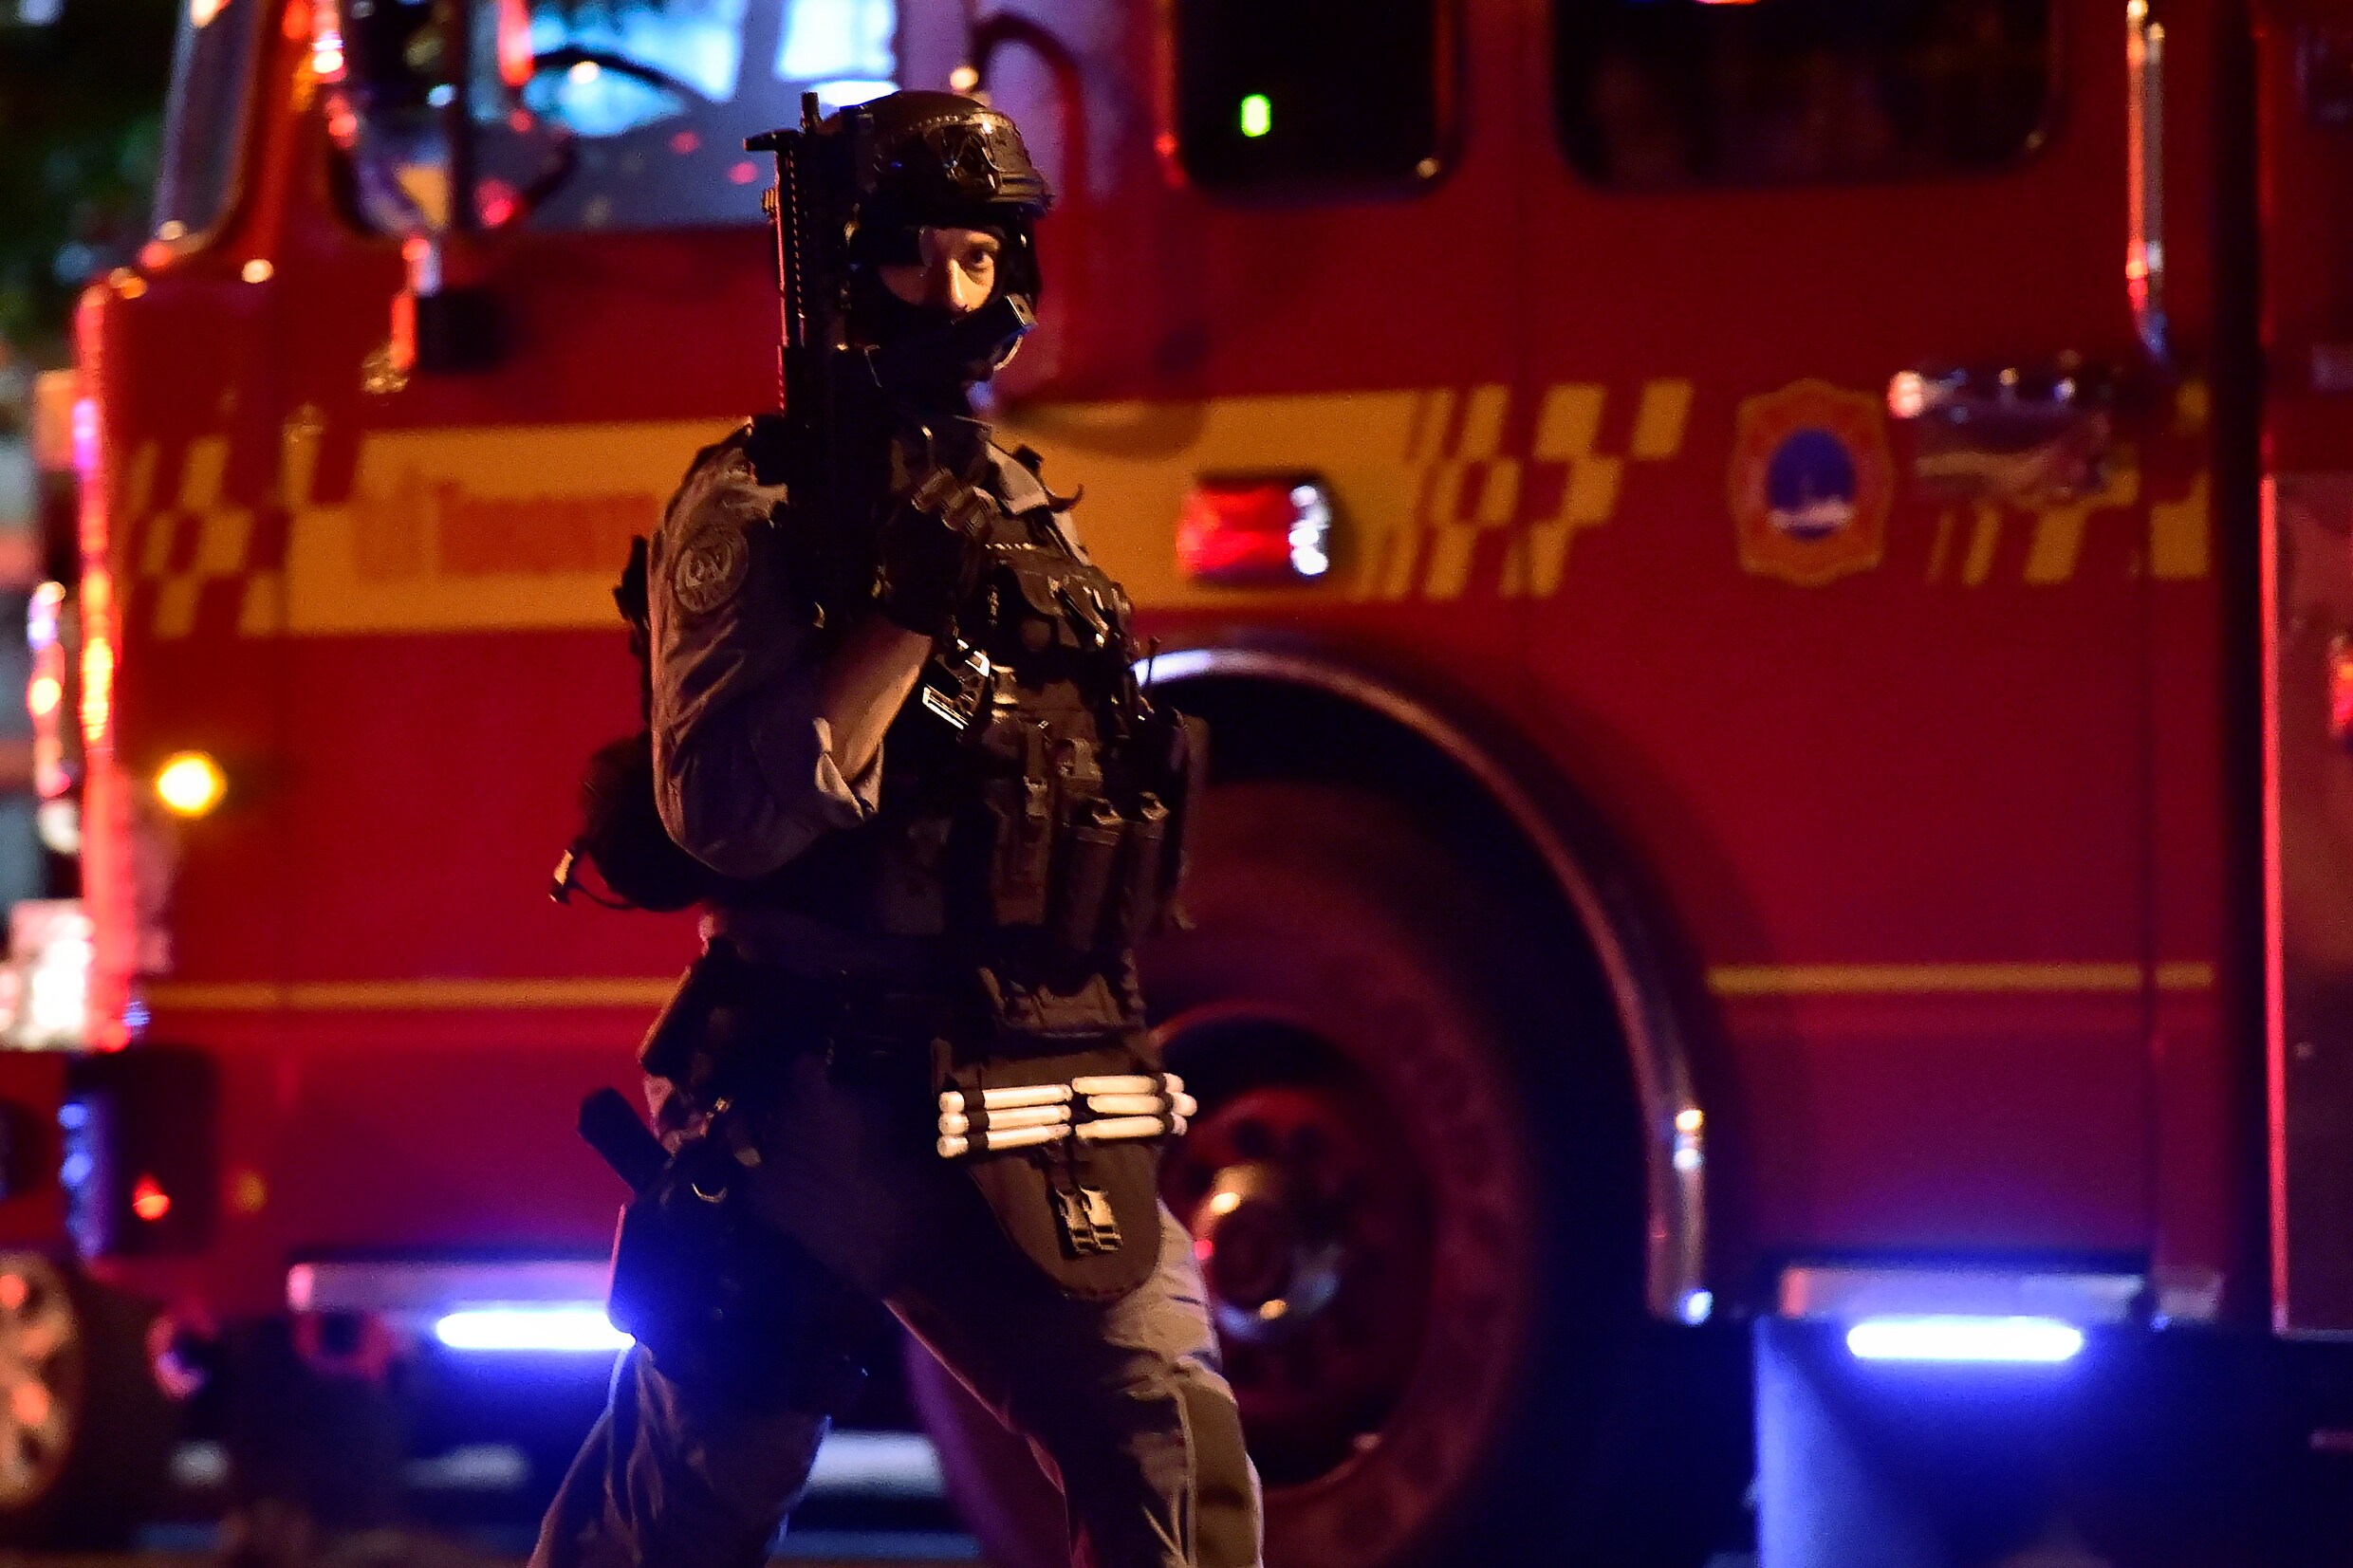 Tweede slachtoffer bezweken na schietpartij aan restaurant in Toronto